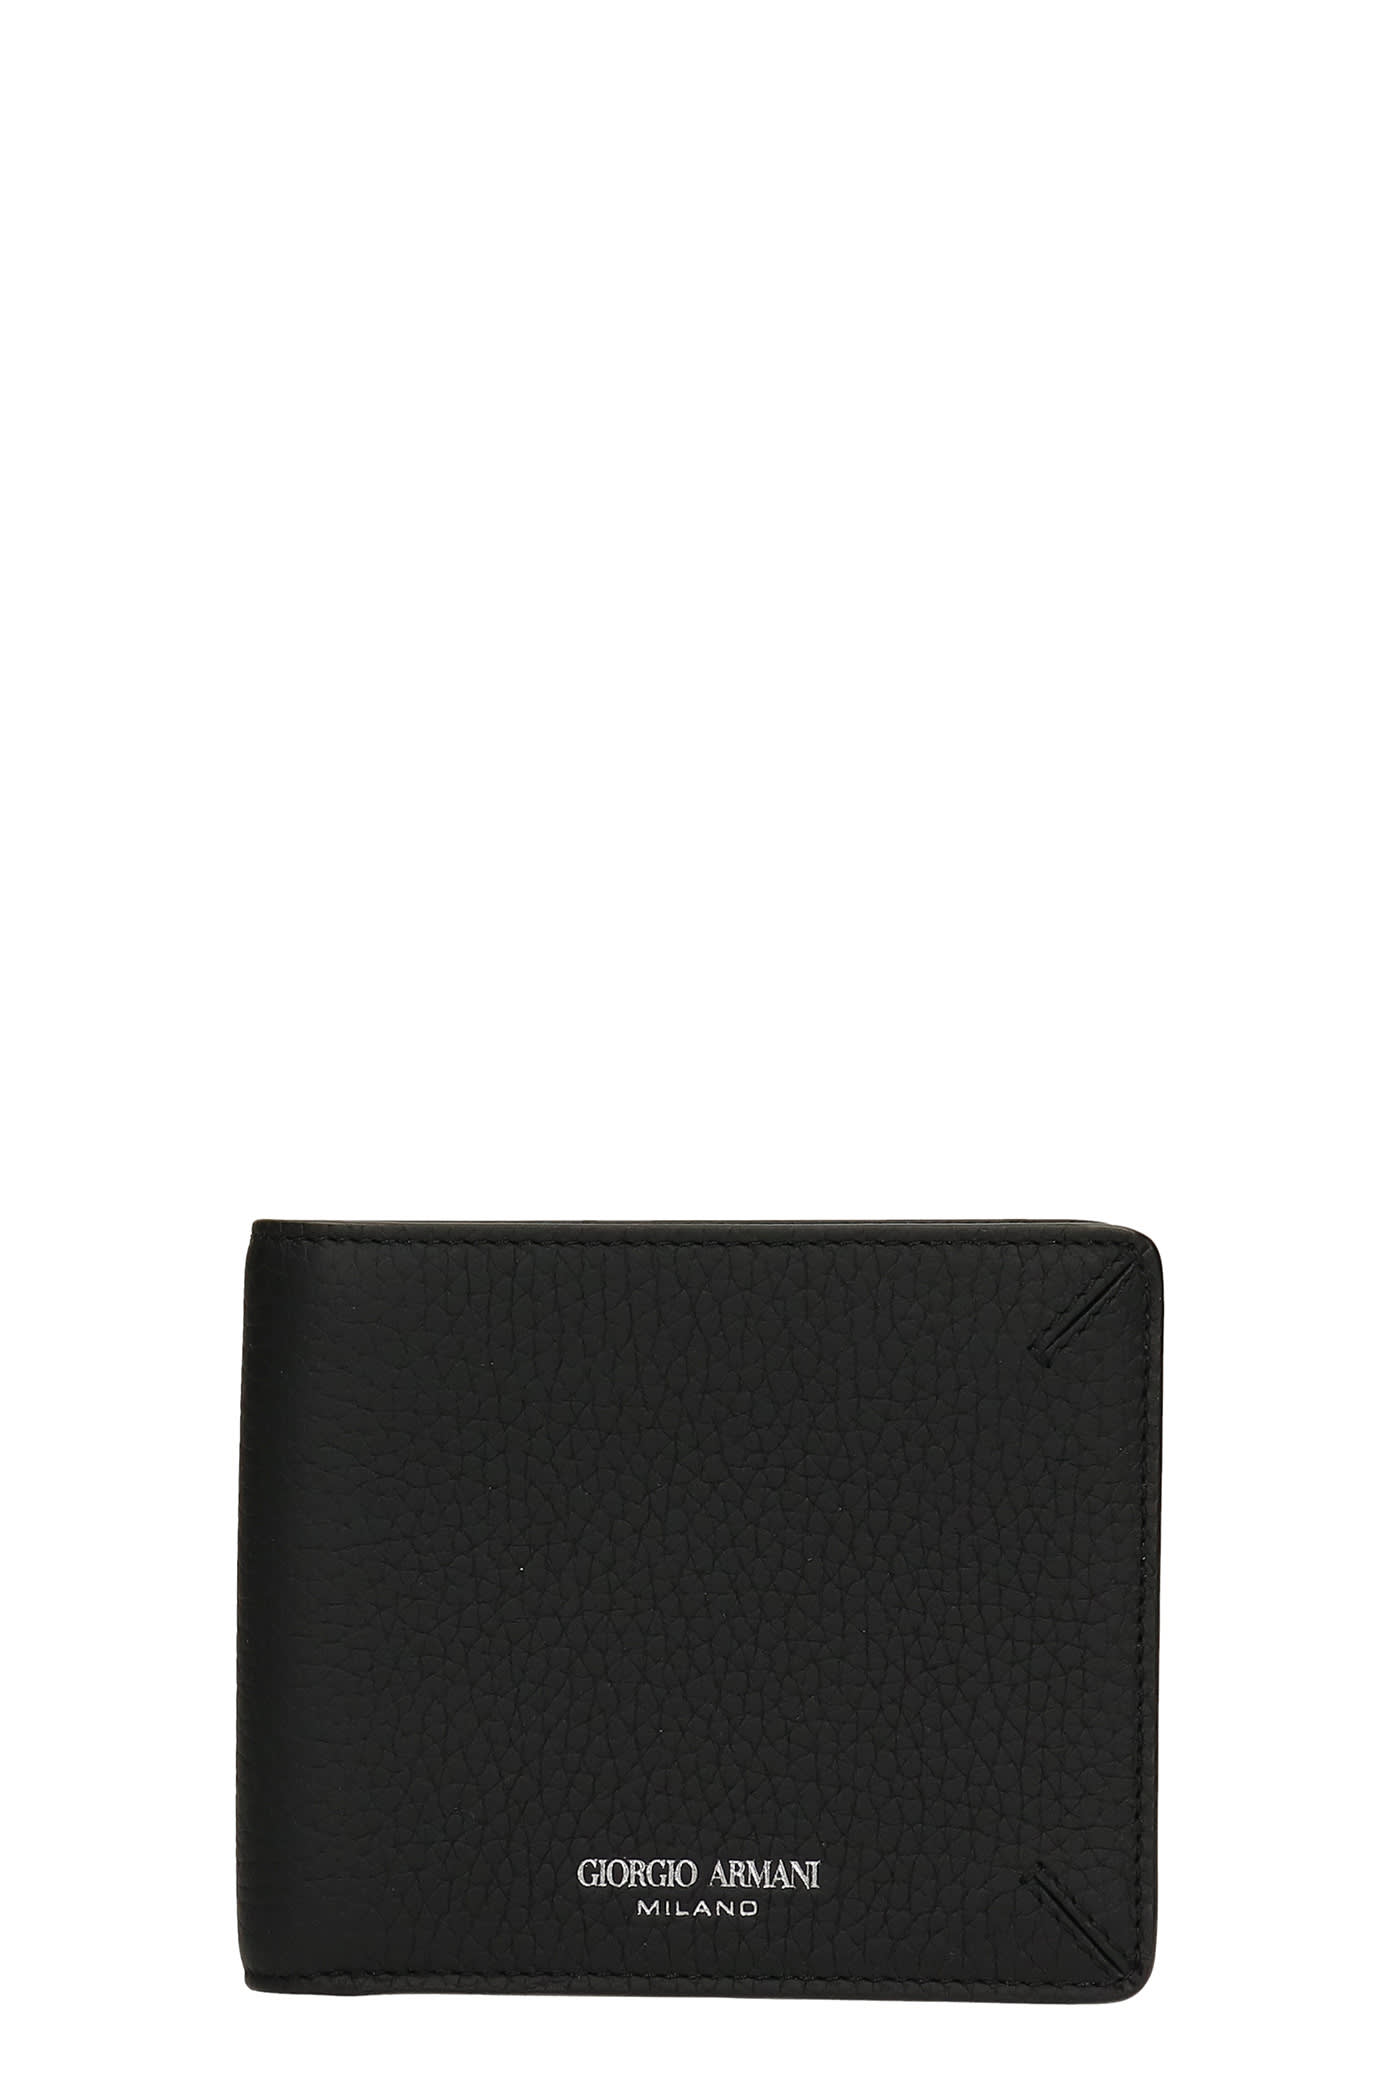 Giorgio Armani Bifold Wallet In Black Leather